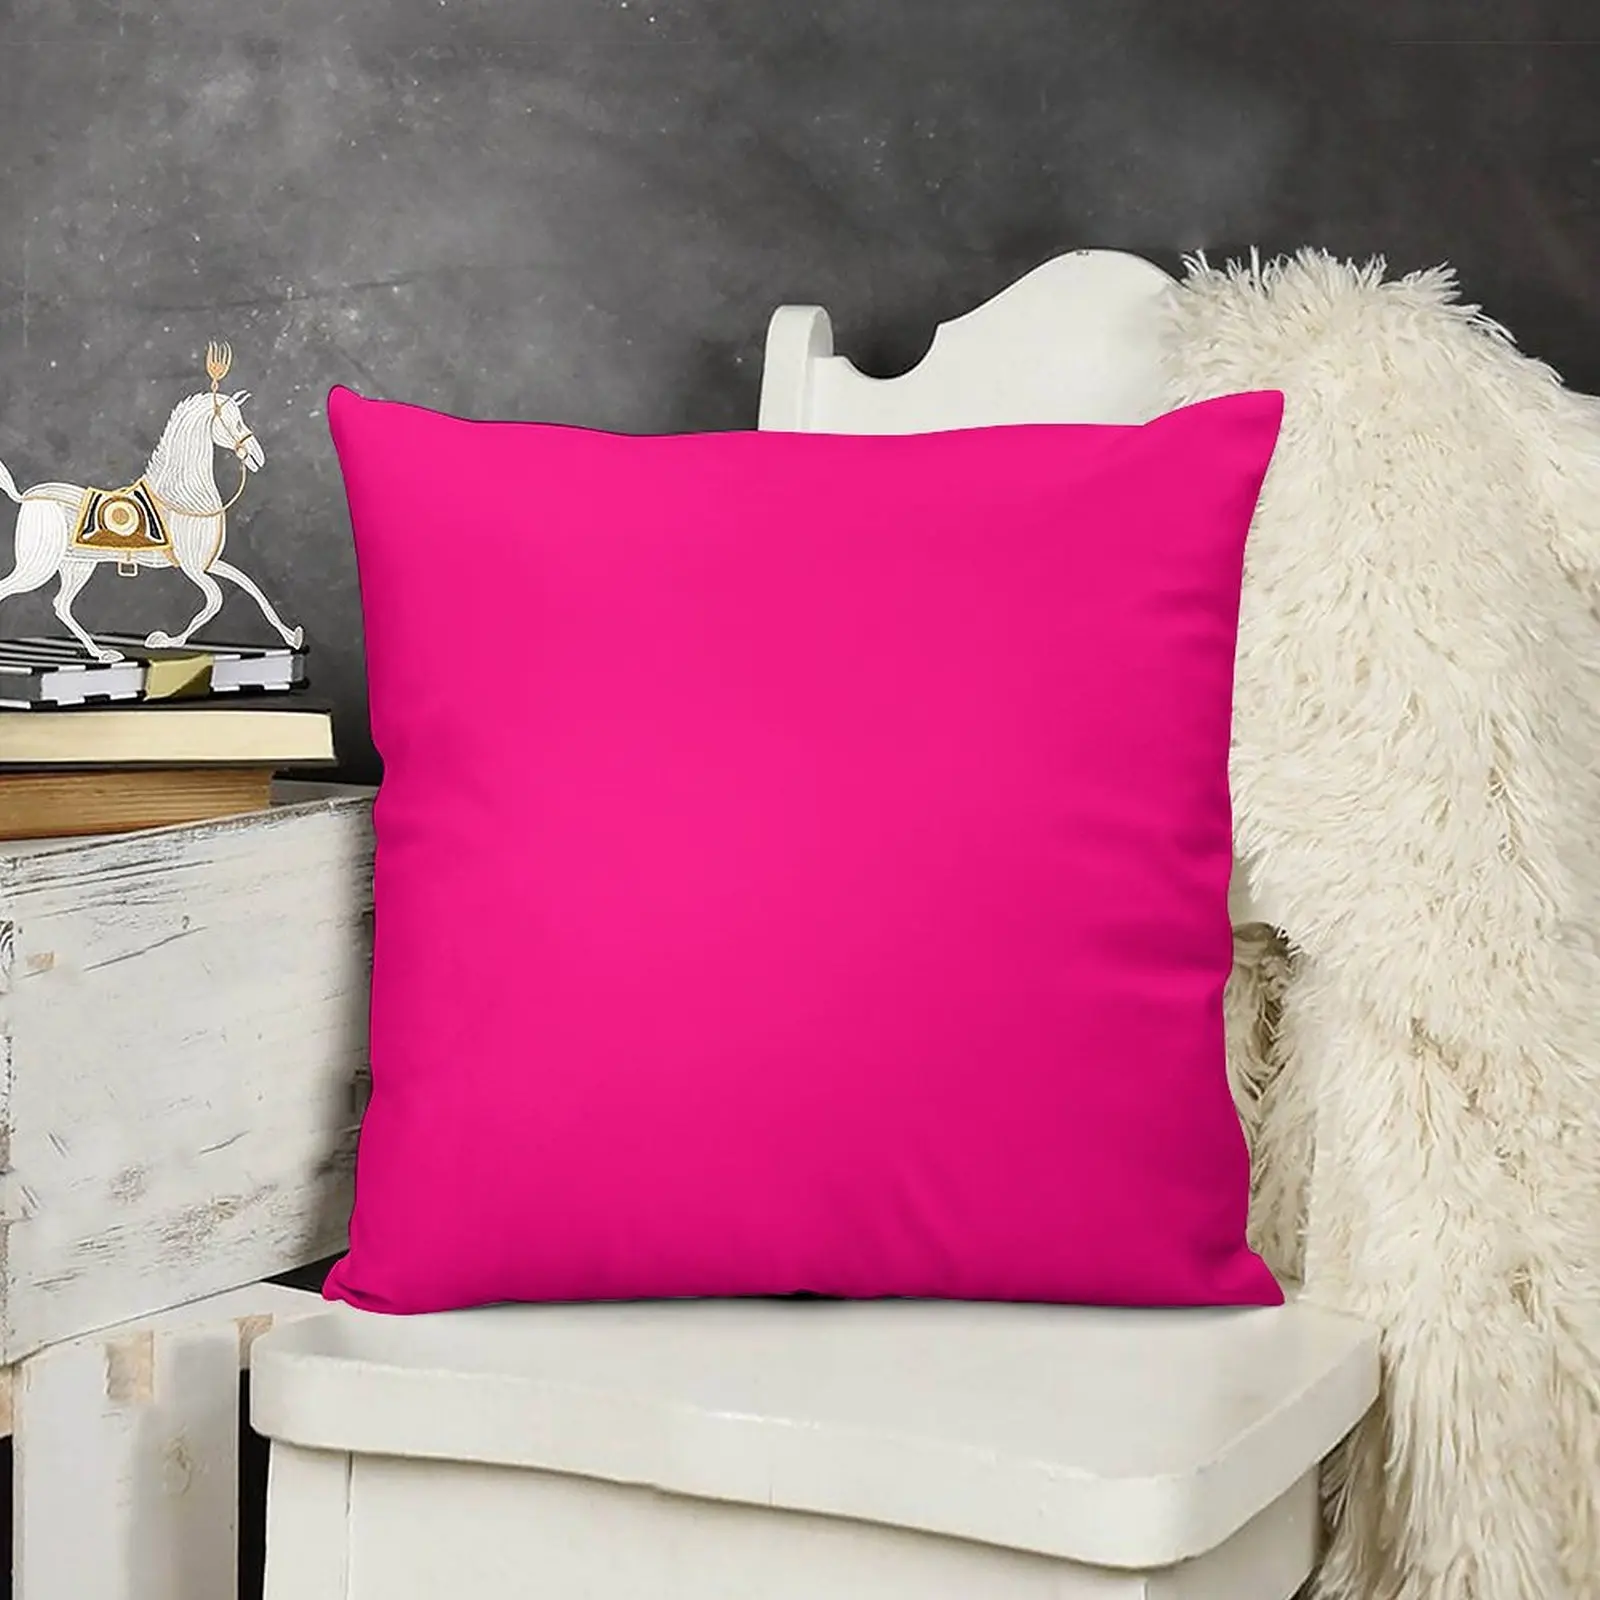 Providence Pink Merry Christmas Velvet Throw Pillow, 12x20